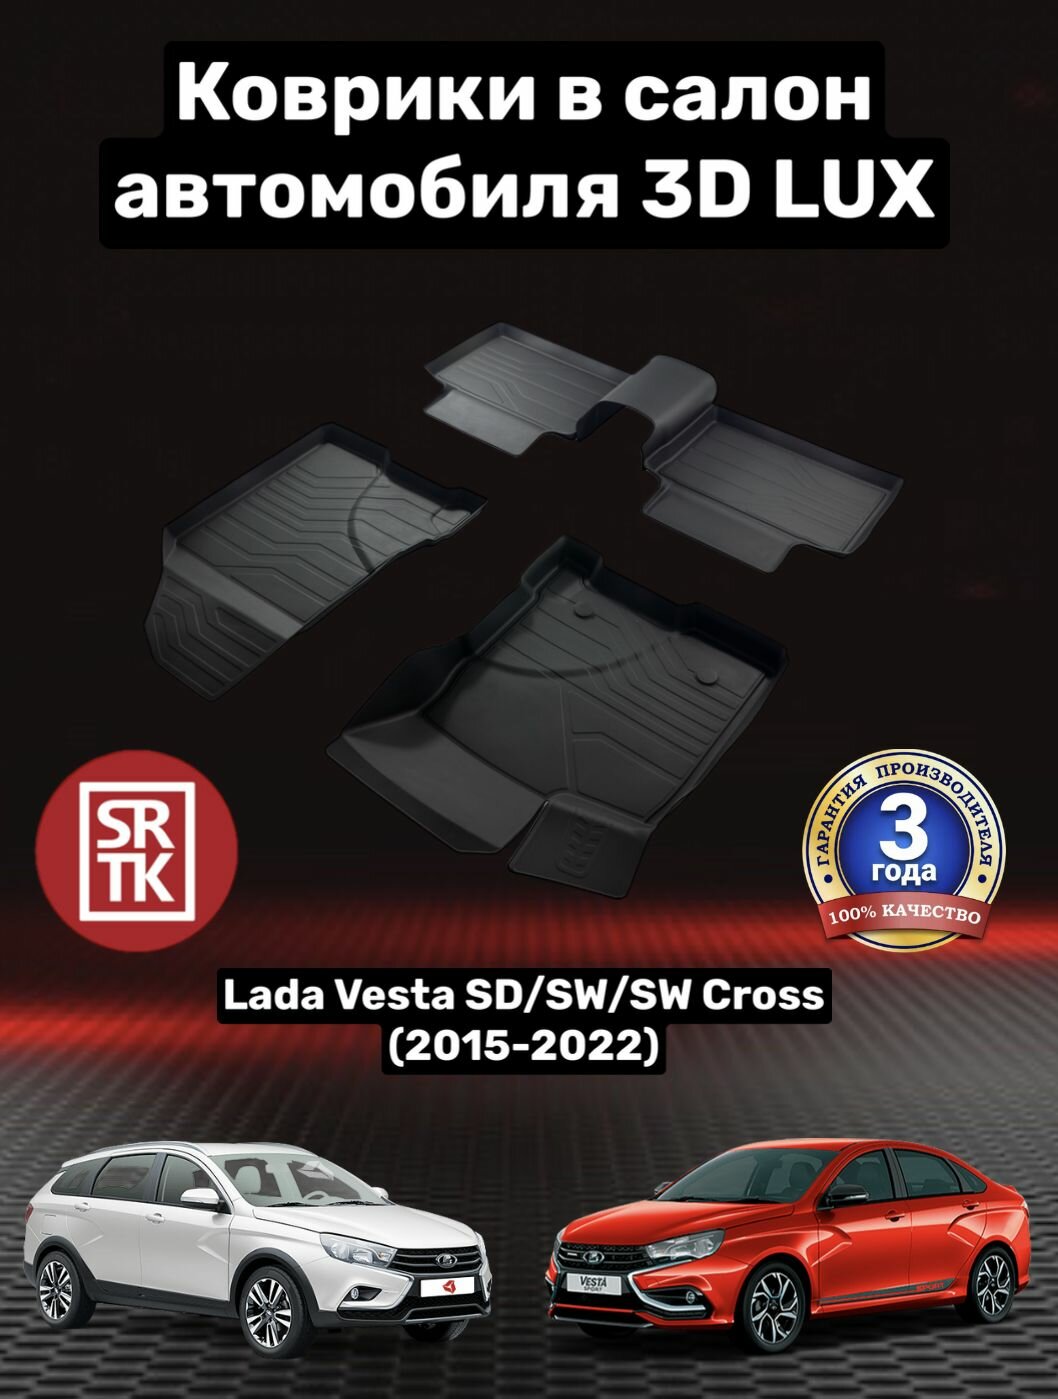 Коврики резиновые Лада Веста/Кросс/Lada Vesta SW/SW Cross (2015-2022) 3D LUX SRTK (Саранск) комплект в cалон